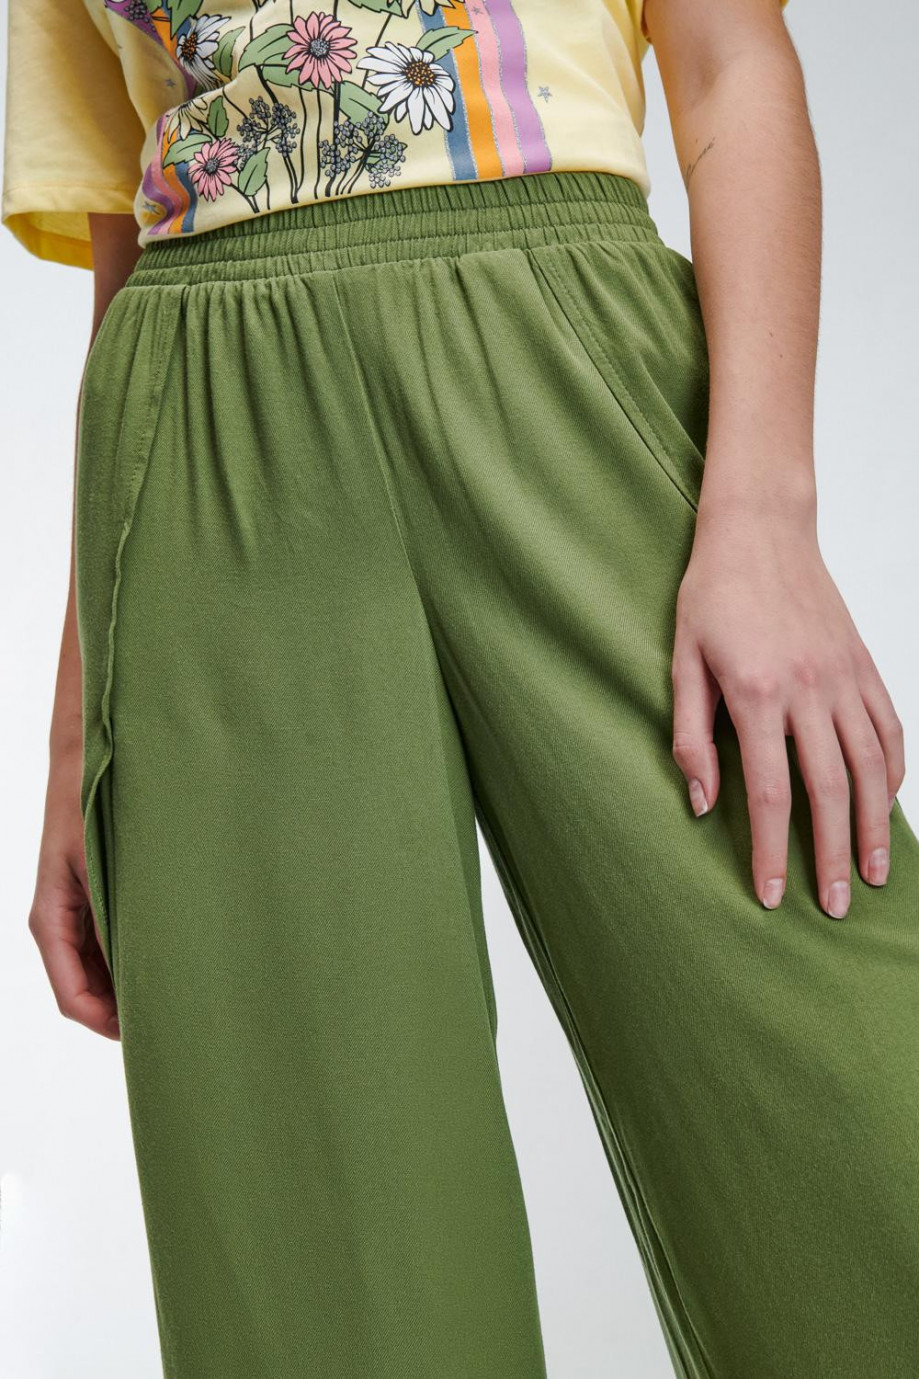 Pantalón verde oscuro tipo culotte con bolsillos y abertura en botas